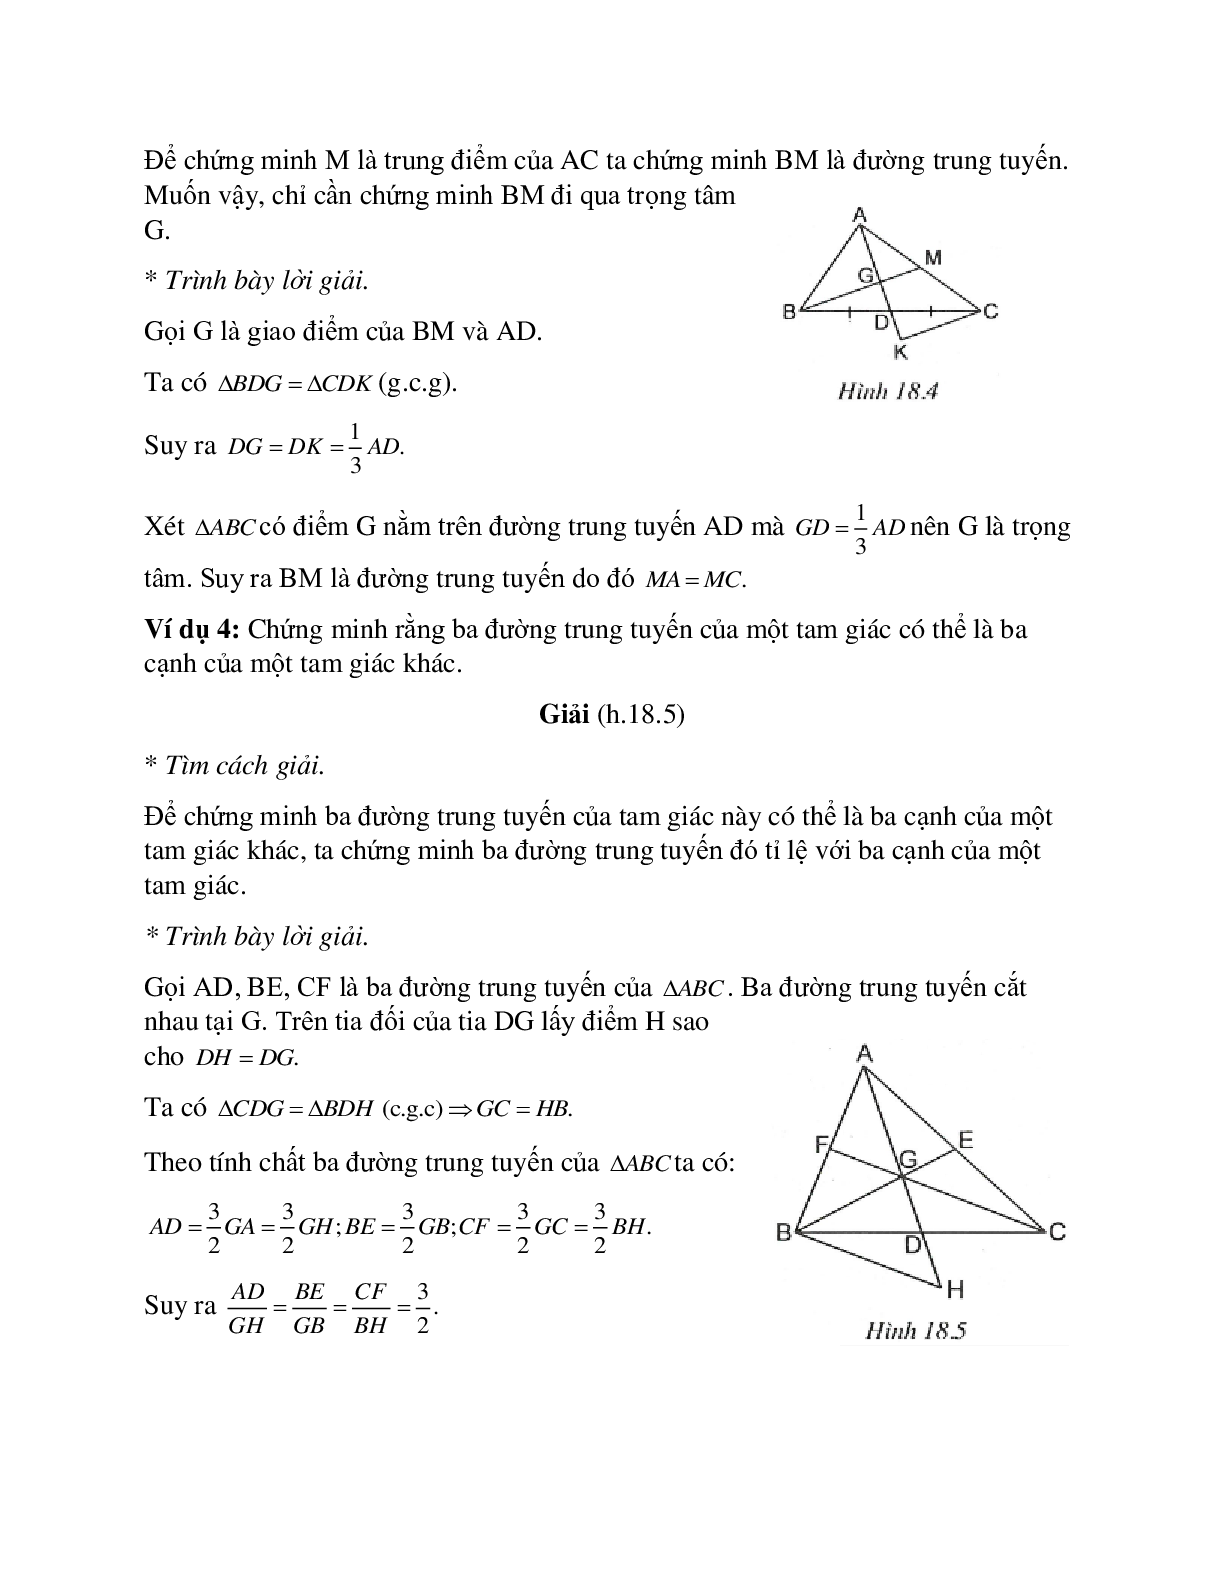 Tuyển tập những bài tập hay nhất về Tính chất ba đường trung tuyến của tam giác có lời giải (trang 3)